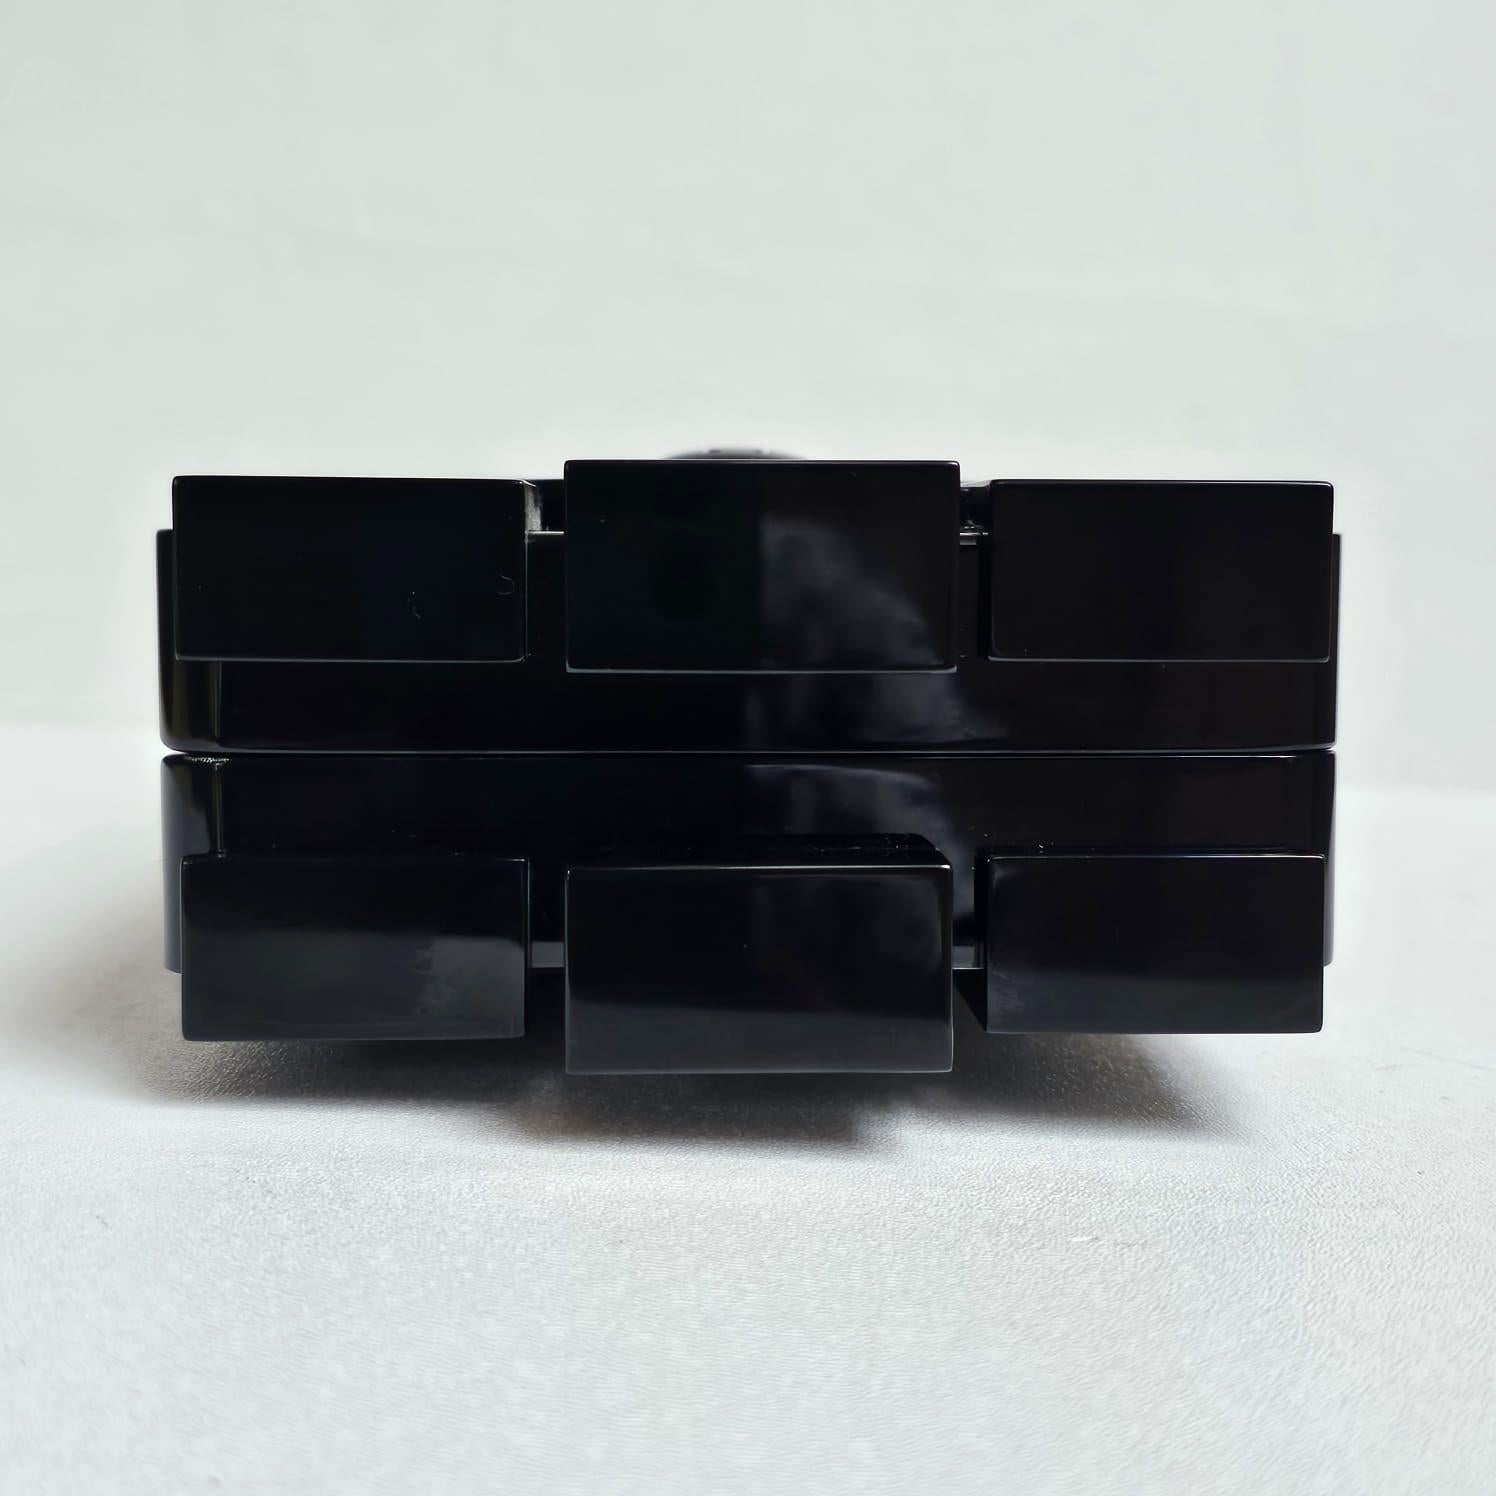 2013 Chanel Strass Crystal Lego Brick Clutch Bag 4